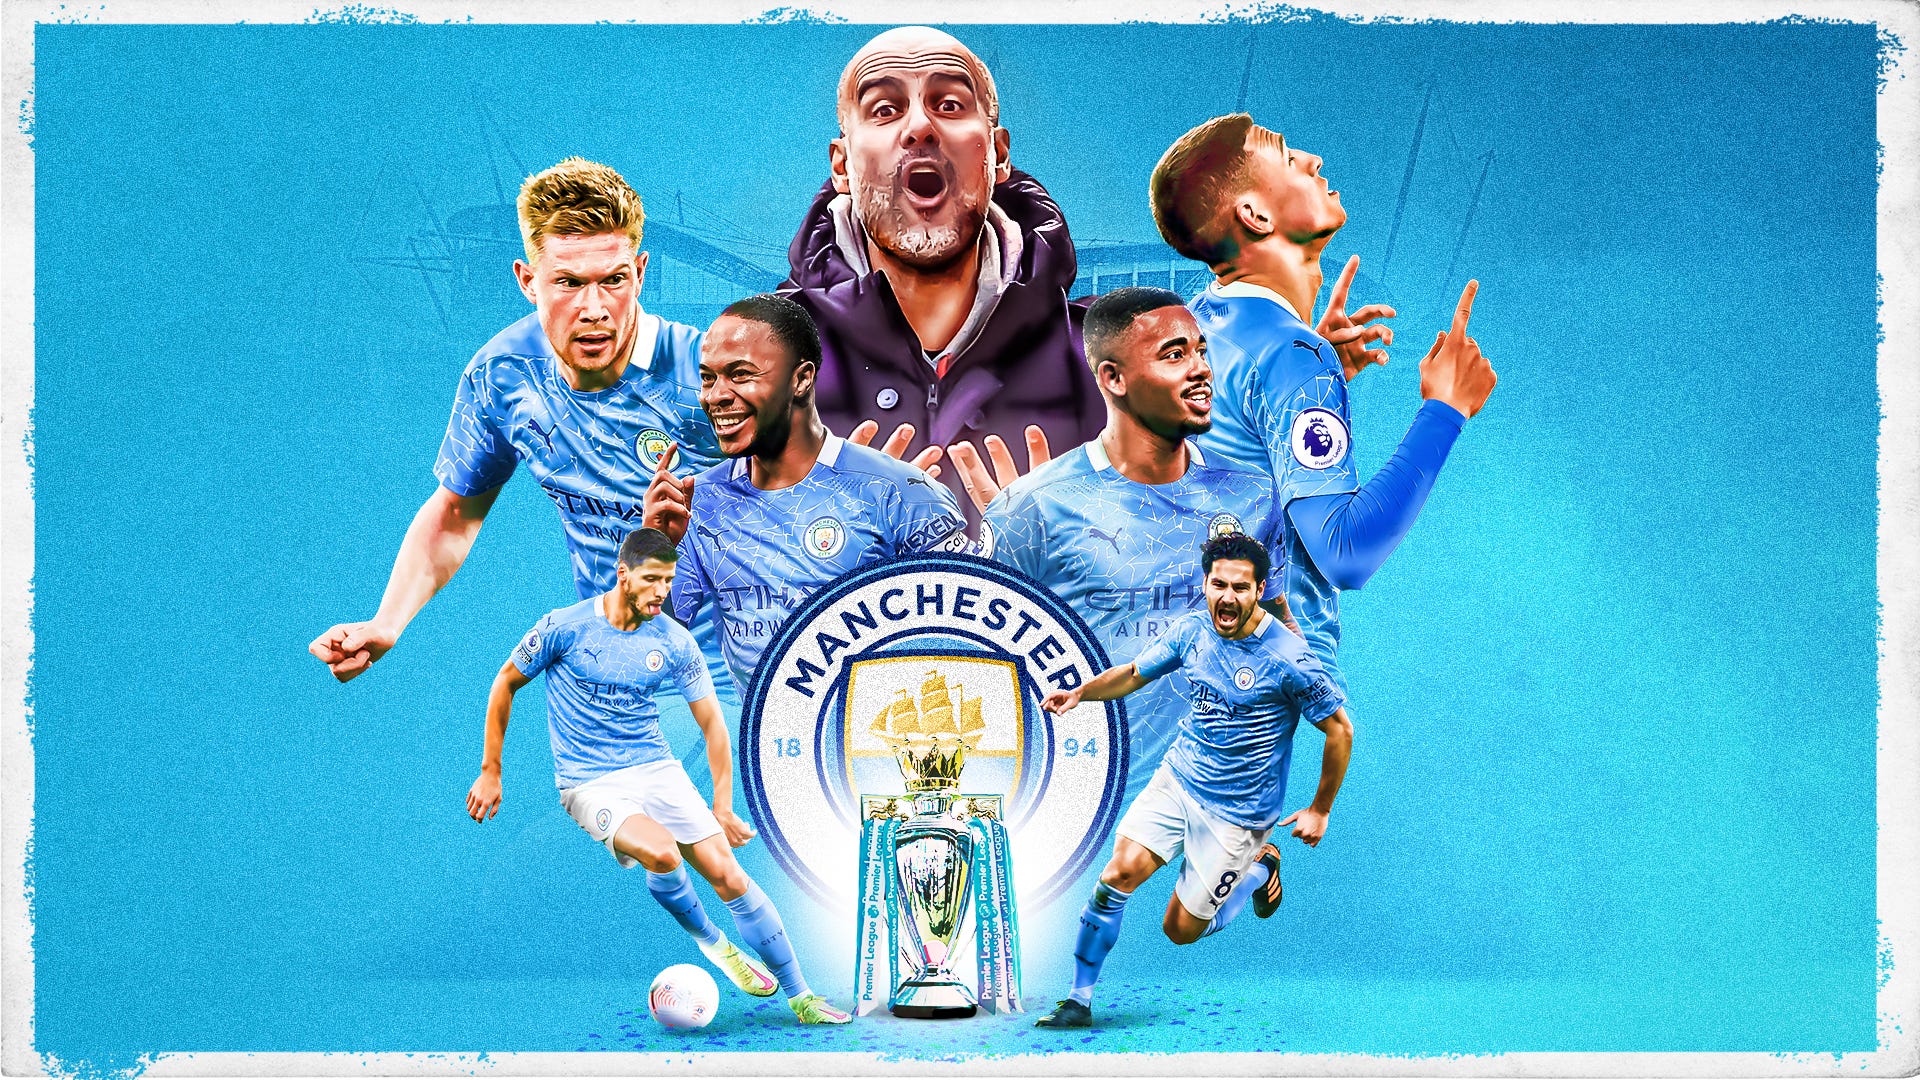 Premier League Manchester City feiert Meistertitel auf der Couch